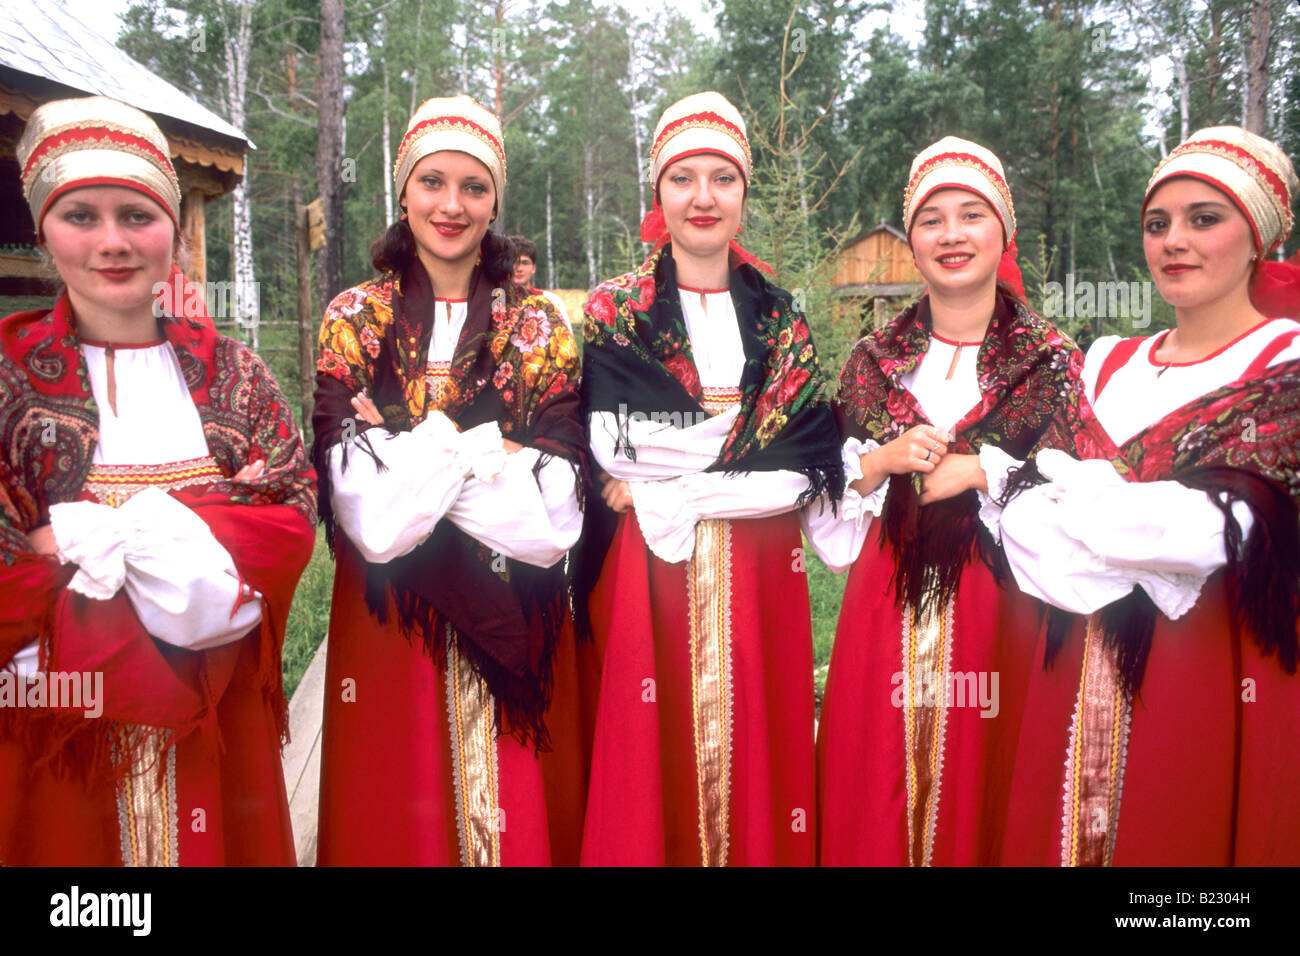 Russische Frauen in traditioneller Kleidung Sibirien Russland Lächeln  Stockfotografie - Alamy